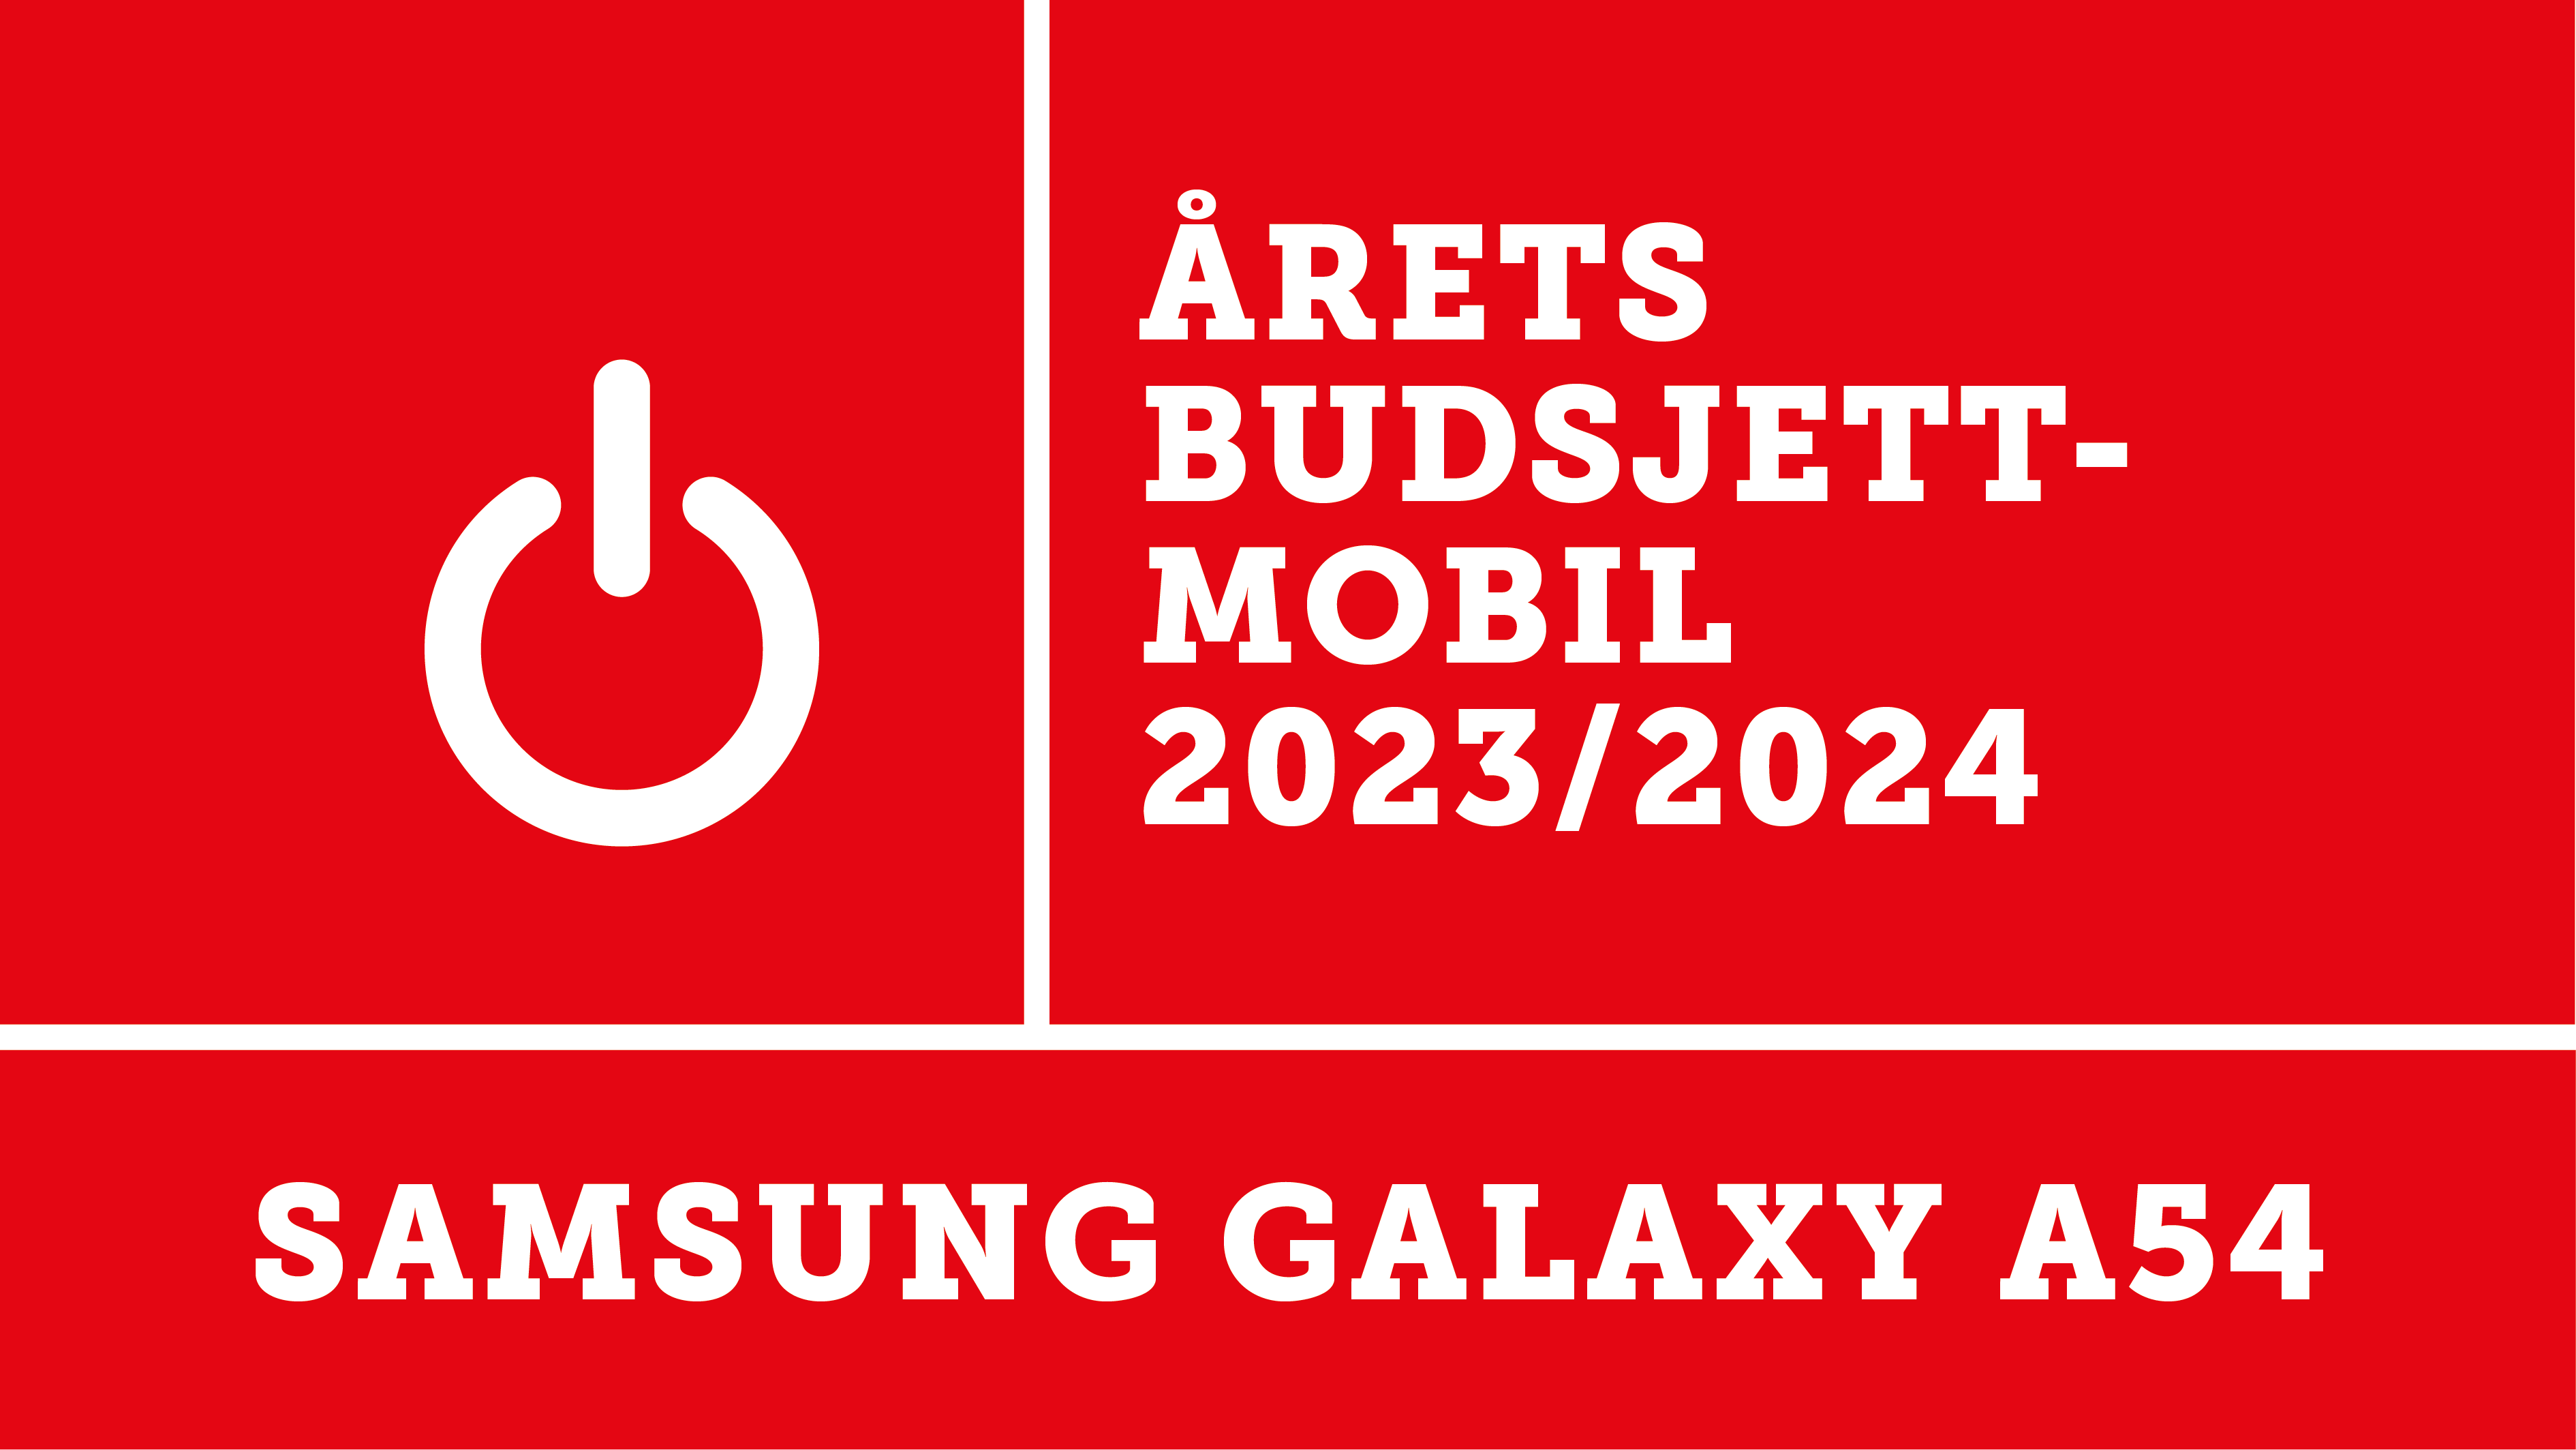 Samsung Galaxy A54 er kåret til er kåret til årets budsjettmobil 2023/2024 av Elektronikkbransjen.